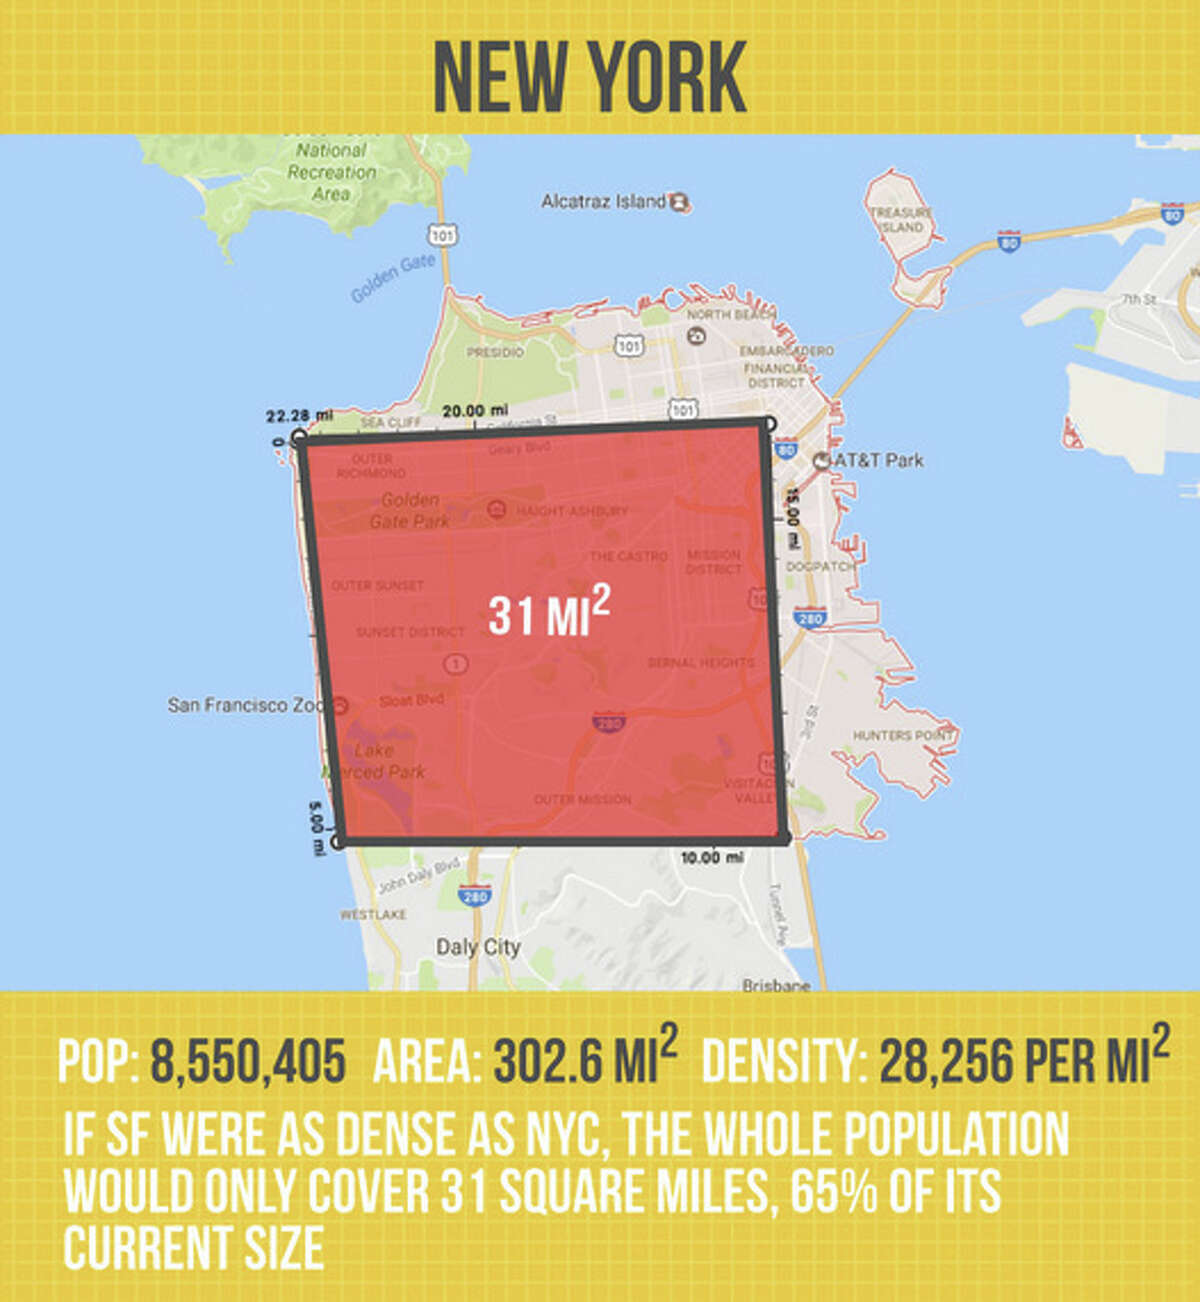 San Francisco vs. New York in density.